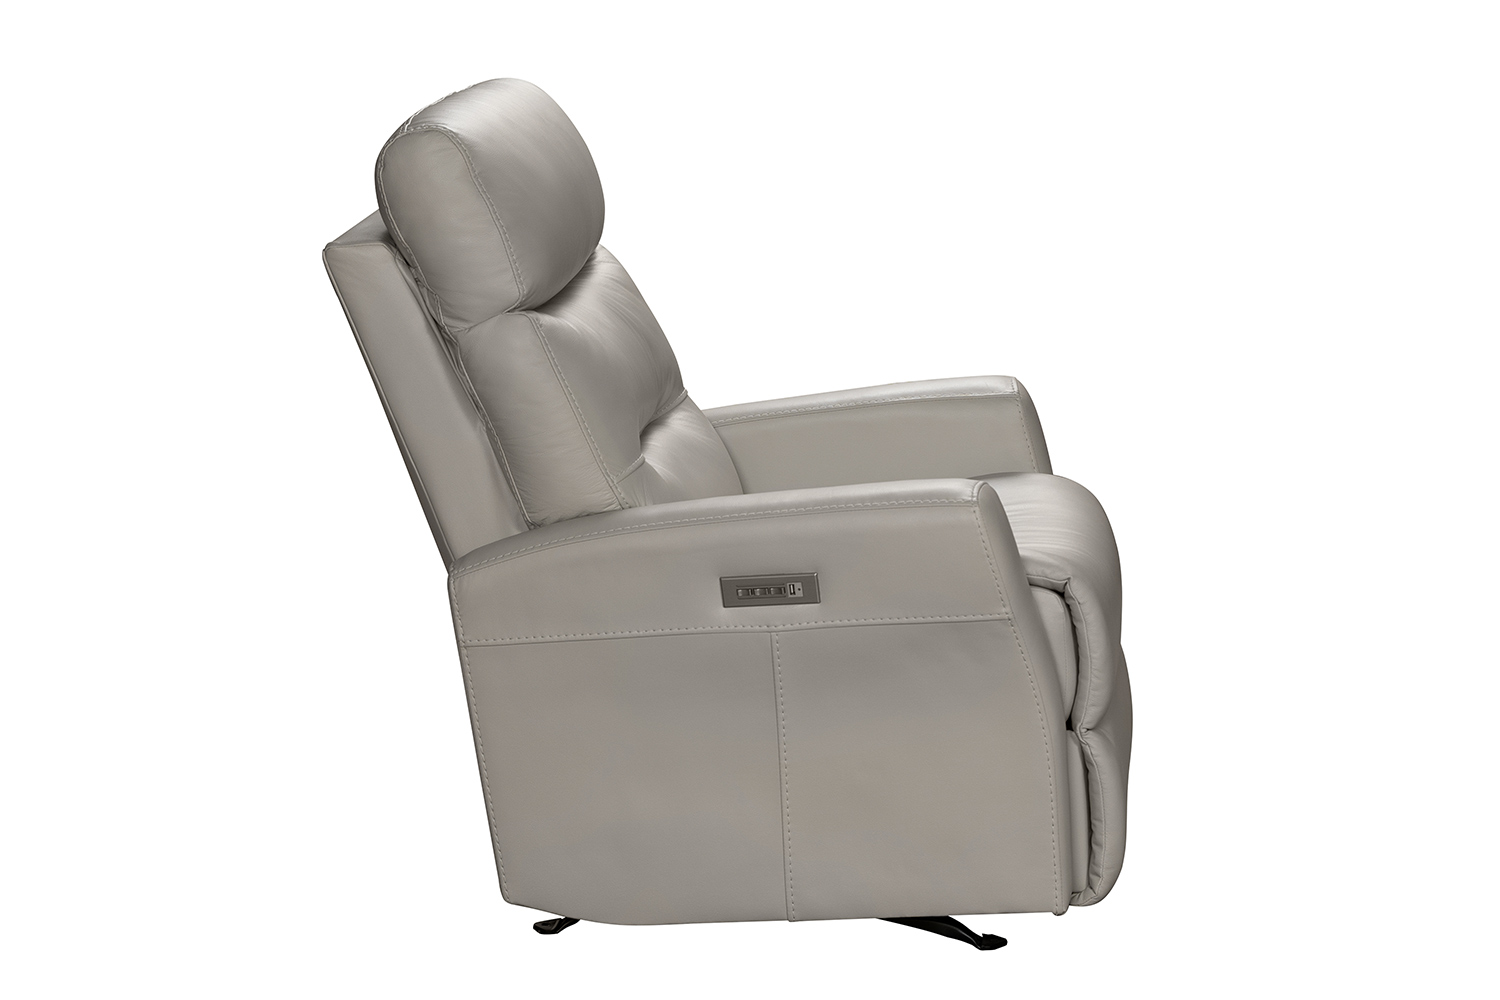 Barcalounger Donavan Power Rocker Recliner Chair with Power Head Rest and Lumbar - Laurel Cream/Leather match